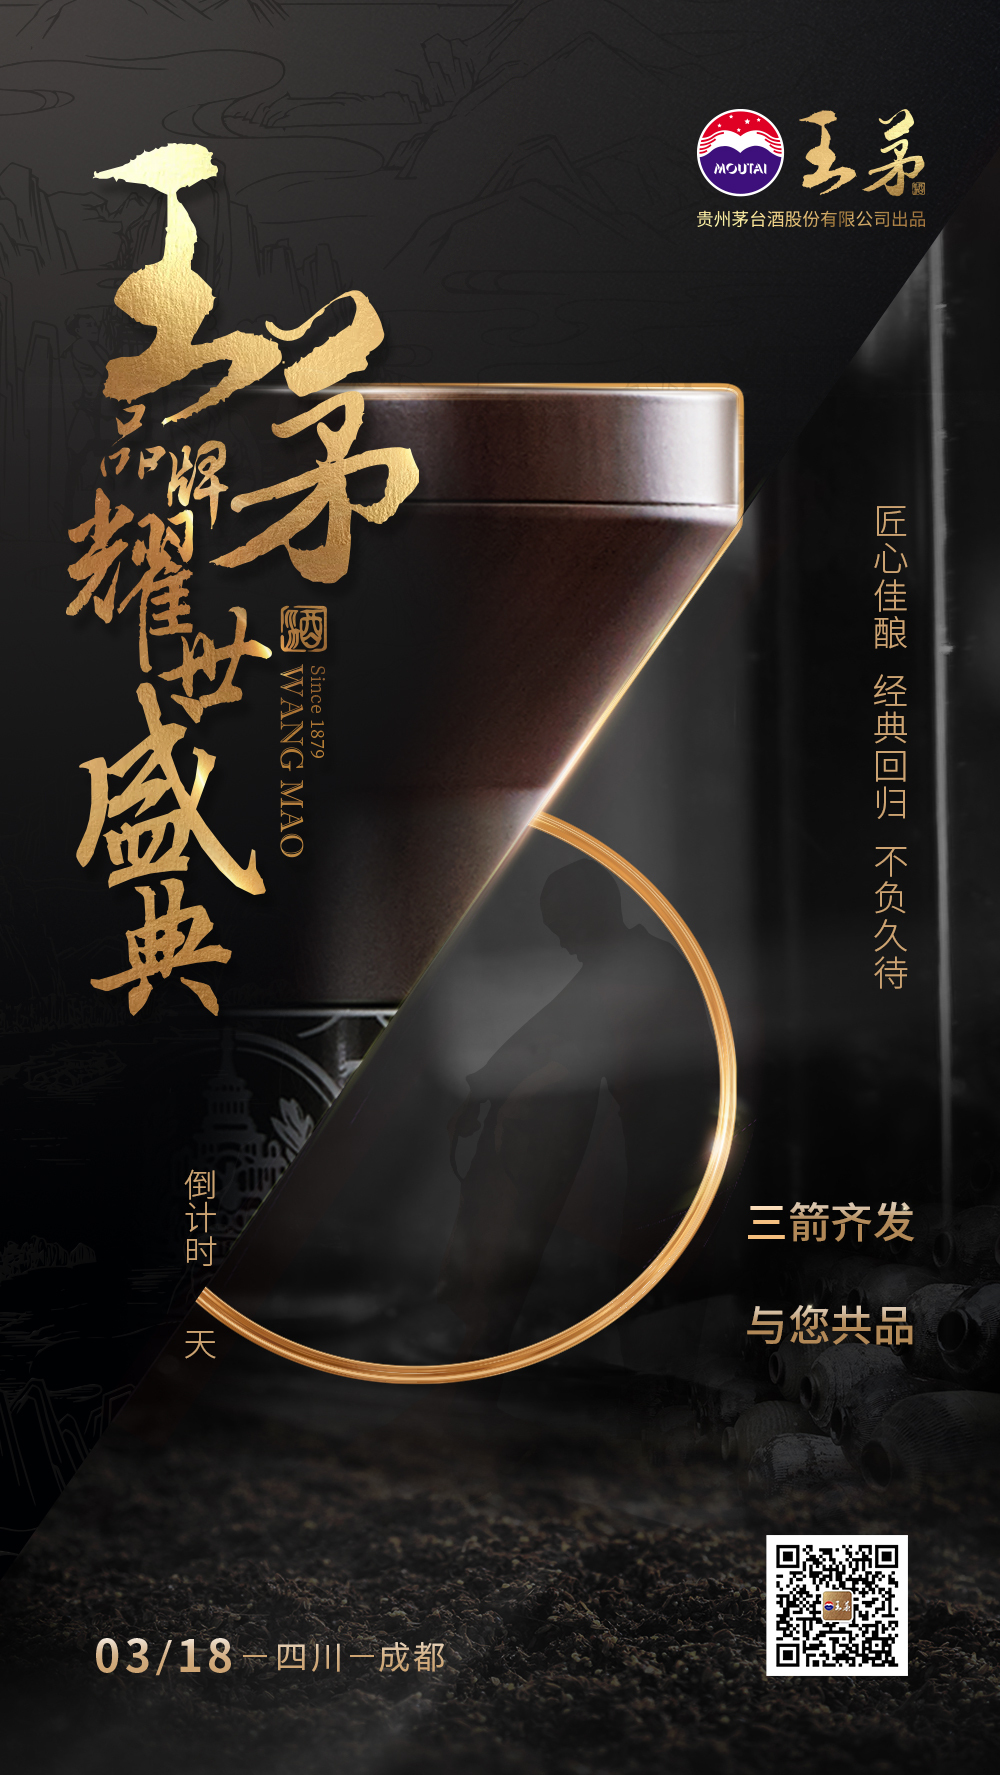 贵州茅台股份有限公司出品王茅酒+王茅酒+产品海报设计图2